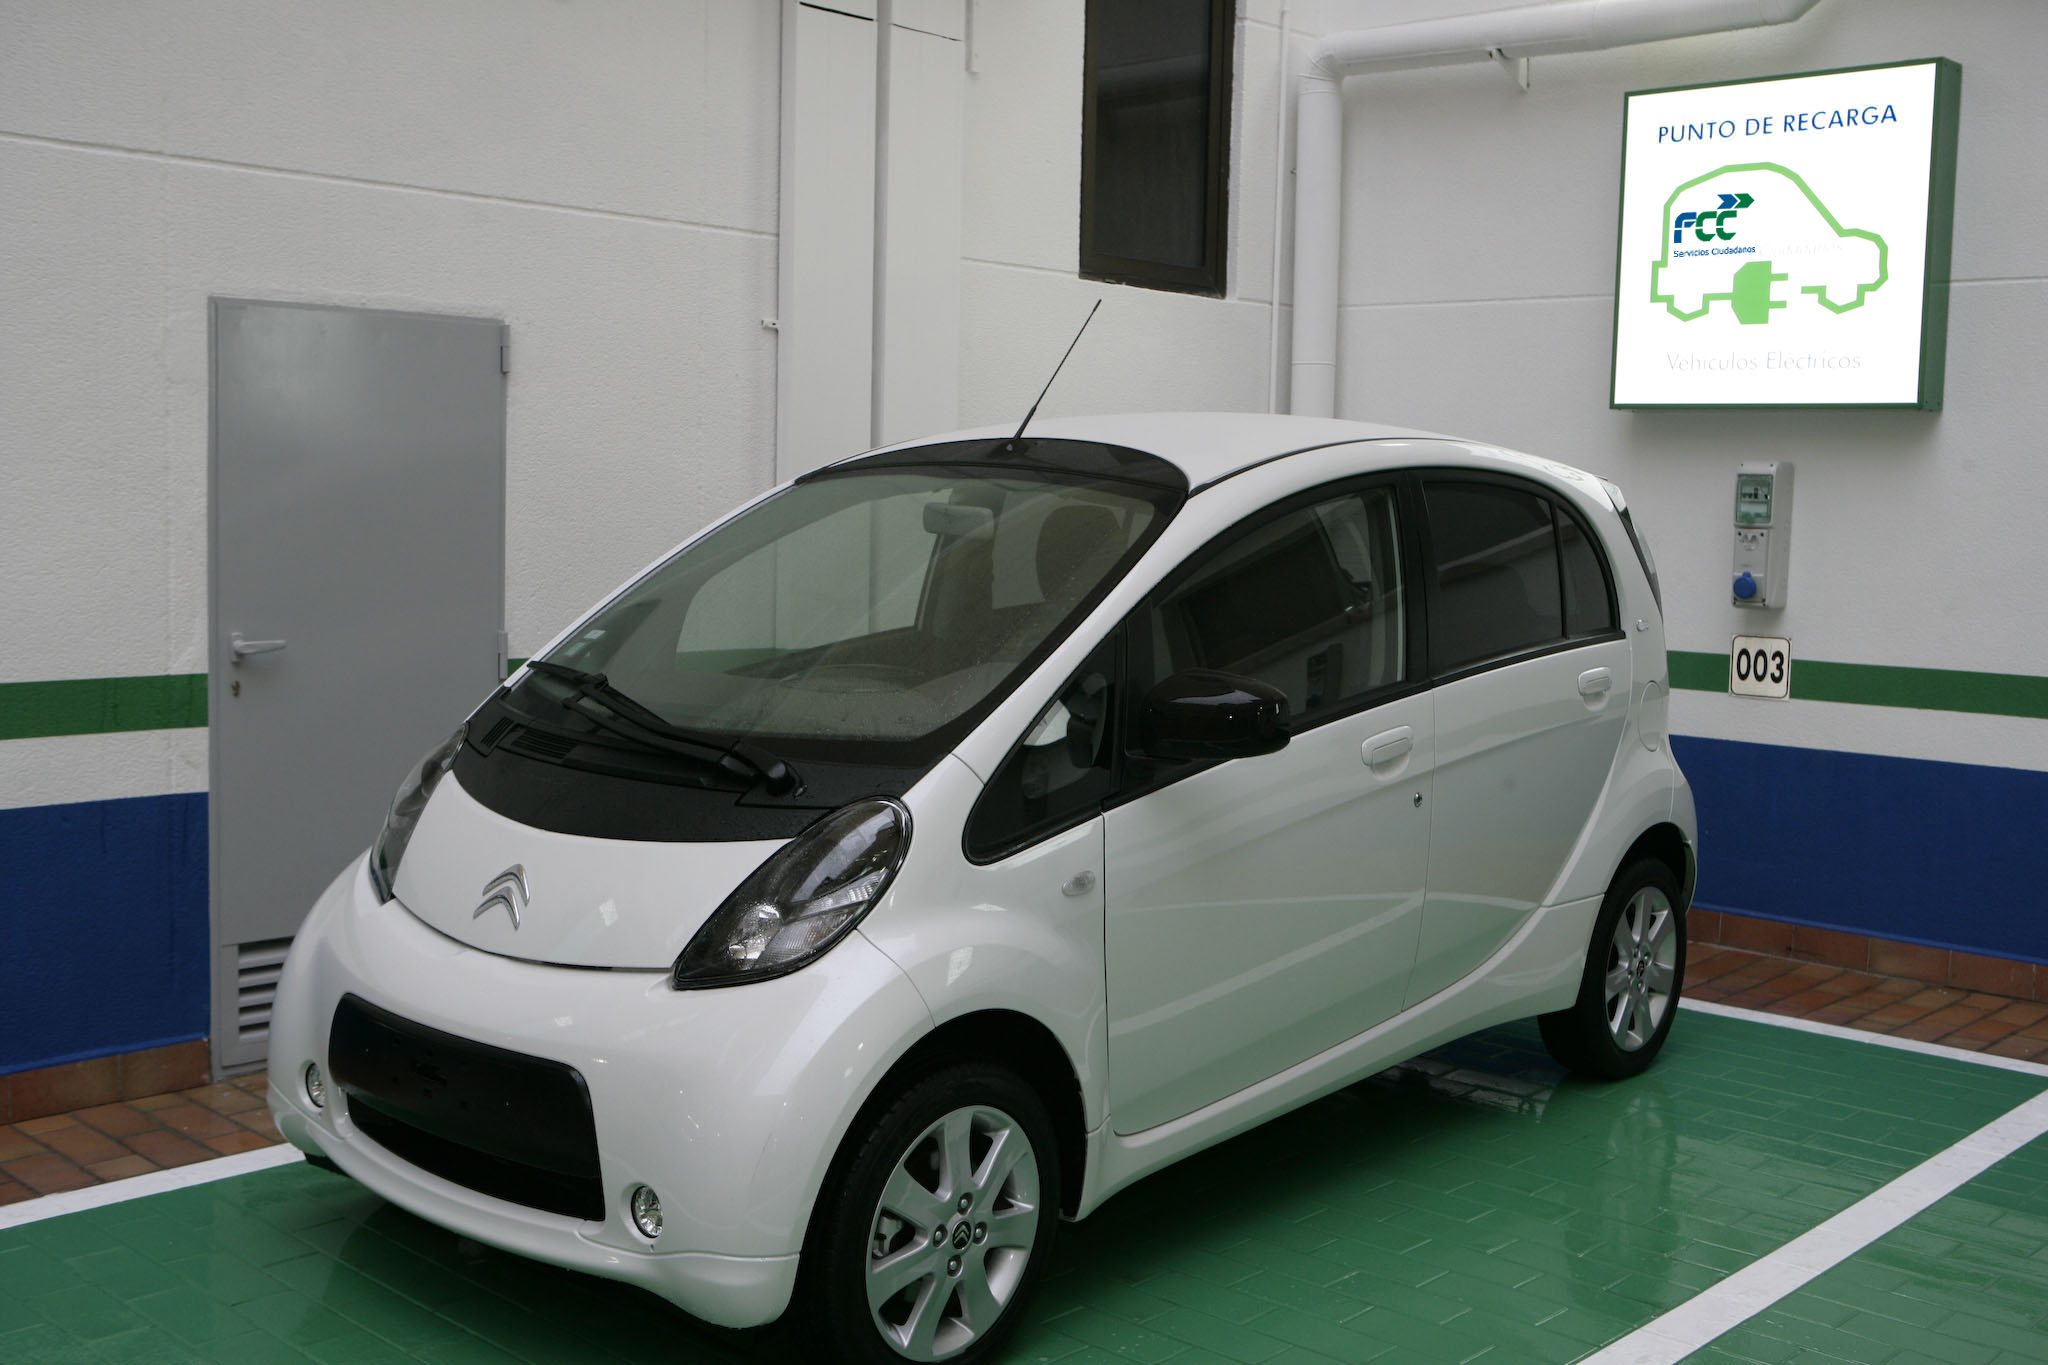 FCC estrena sus primeras plazas de aparcamiento con puntos para recarga de vehículos eléctricos en su sede de Madrid